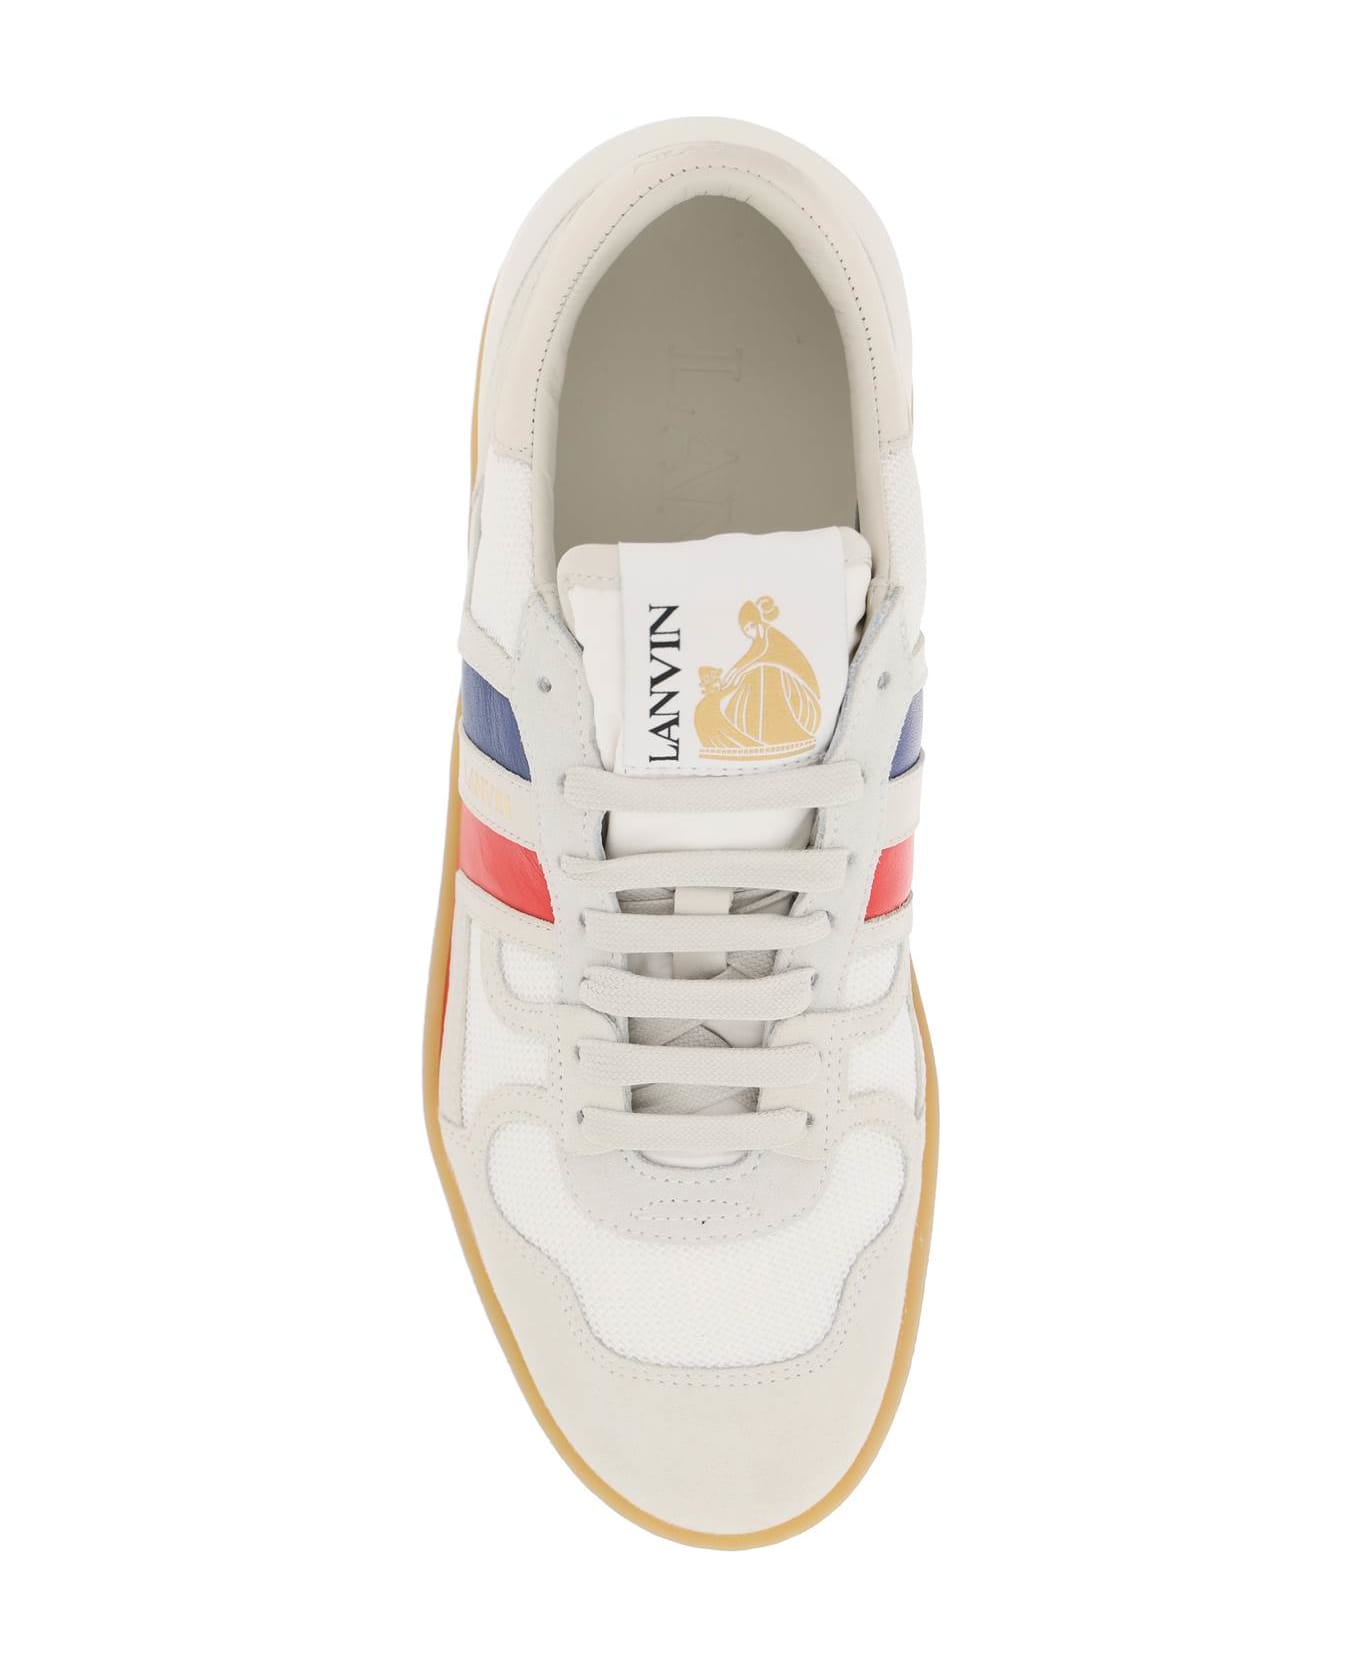 Lanvin Clay Sneakers - White/multicolour